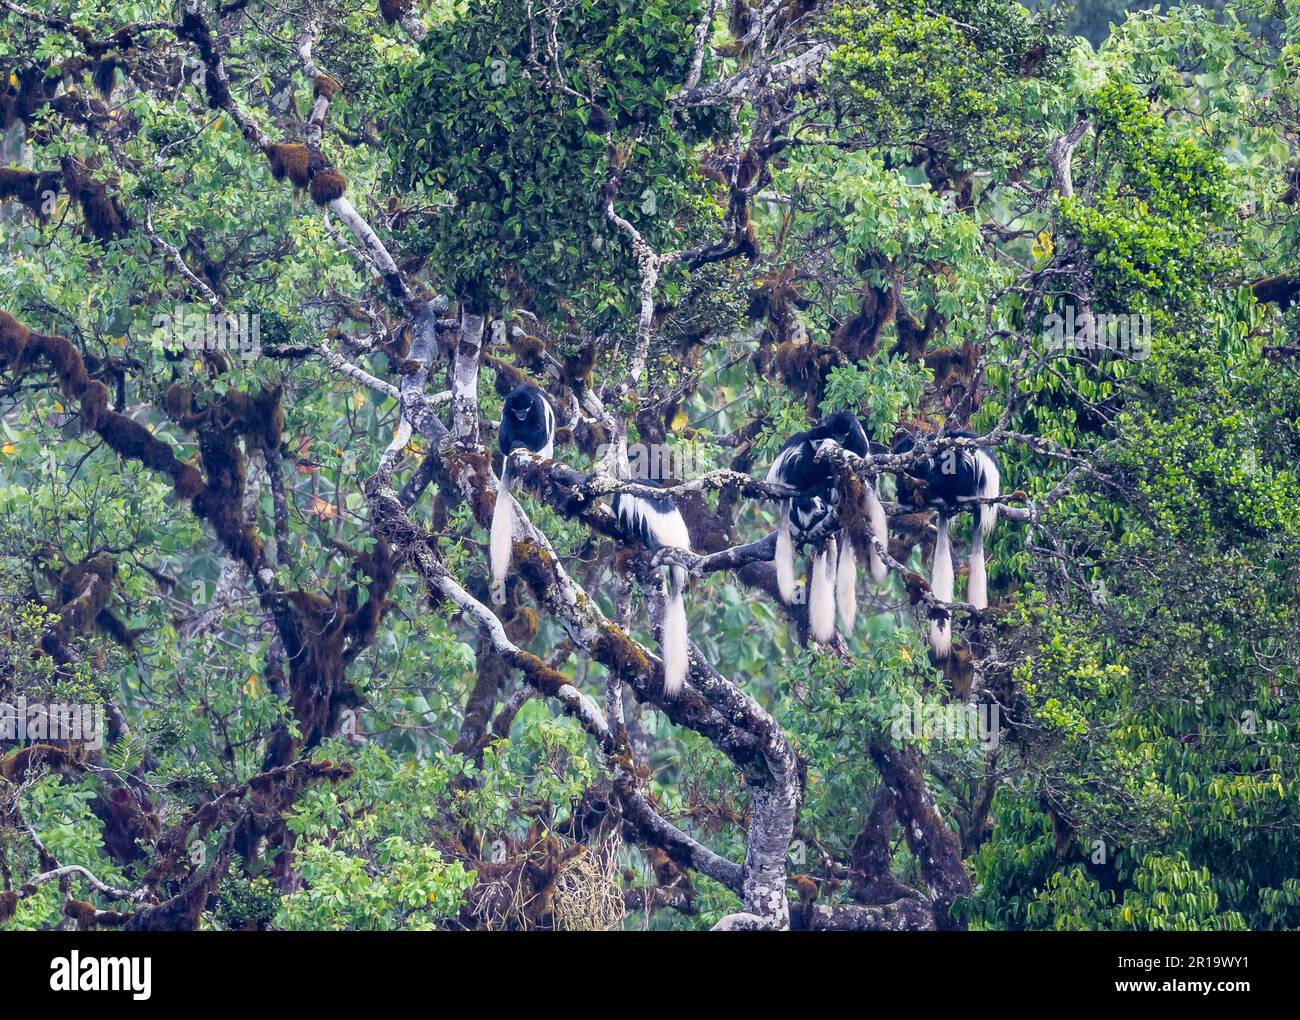 Eine Familie von bemantelten Guereza-Affen (Colobus Guereza), die sich auf einem großen Baum zusammenkauerten. Mount Kenya Nationalpark, Kenia, Afrika. Stockfoto